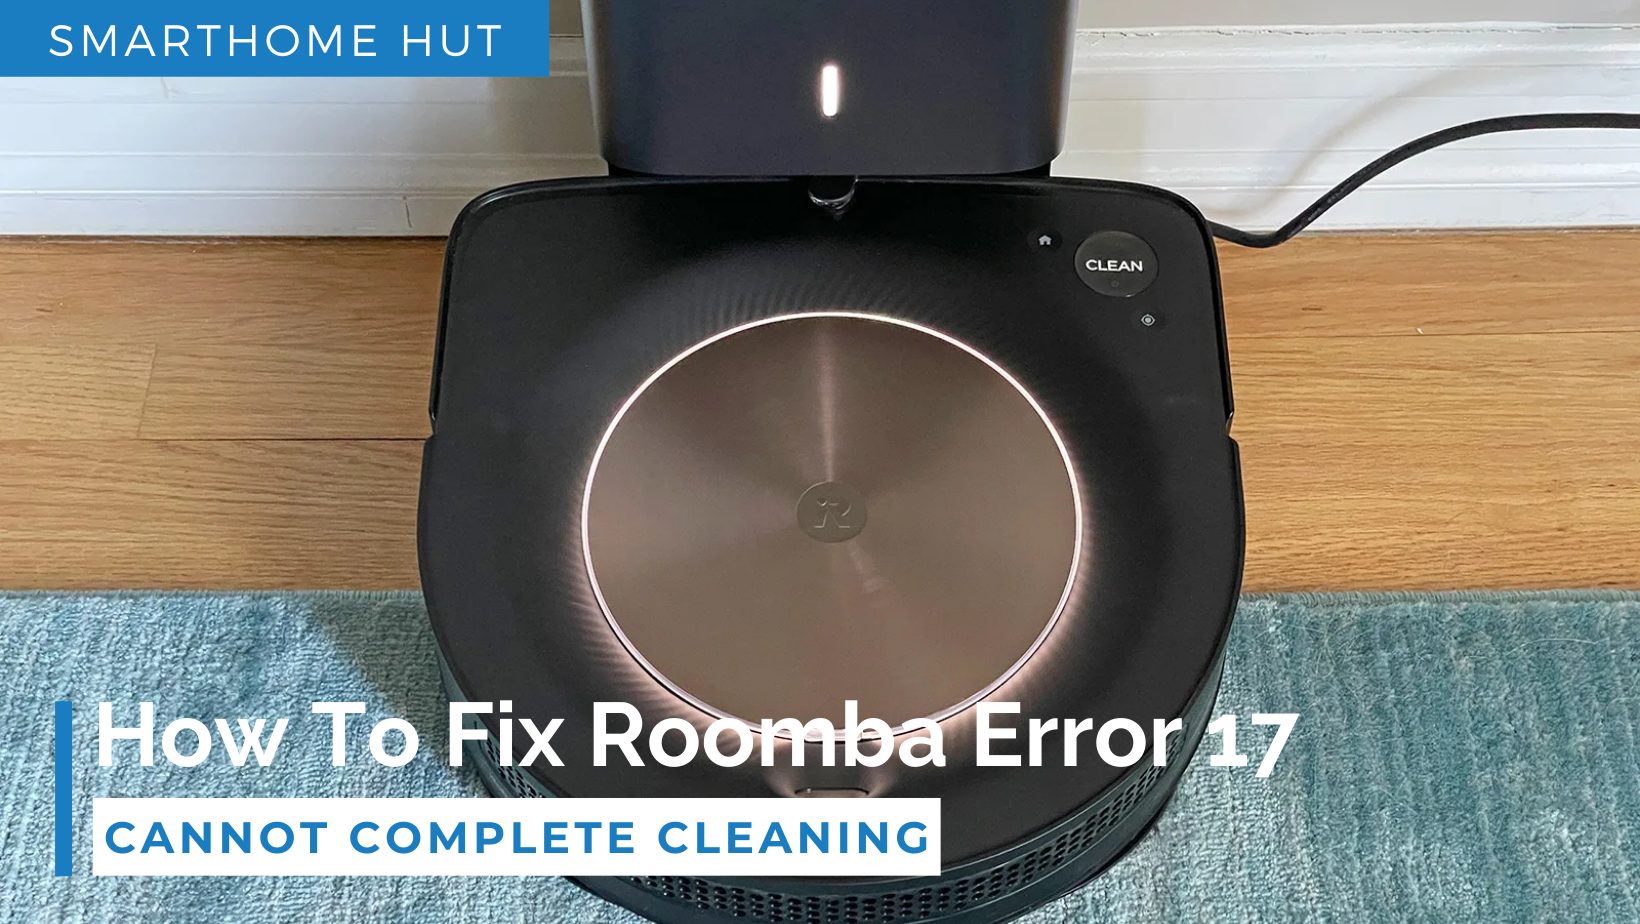 Roomba error 17